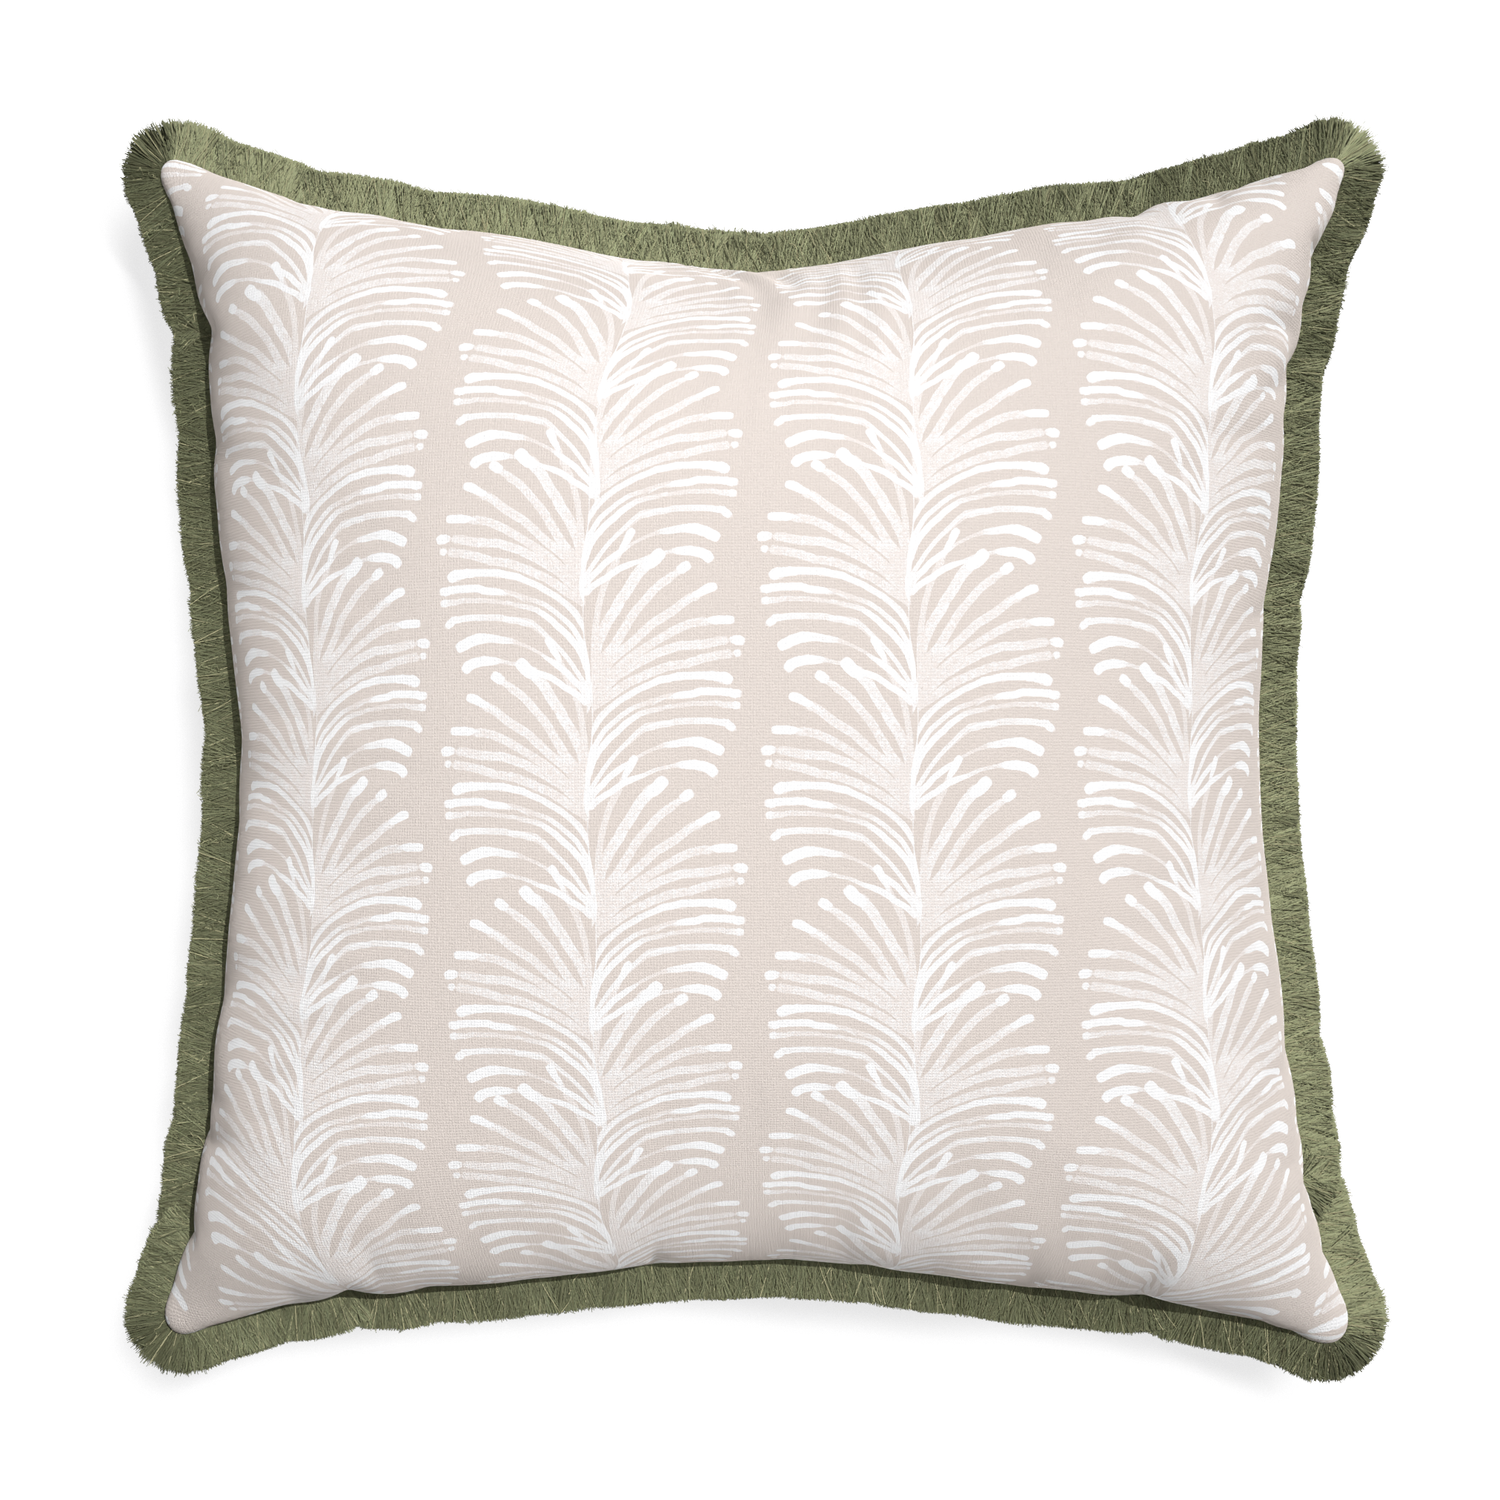 Euro-sham emma sand custom pillow with sage fringe on white background